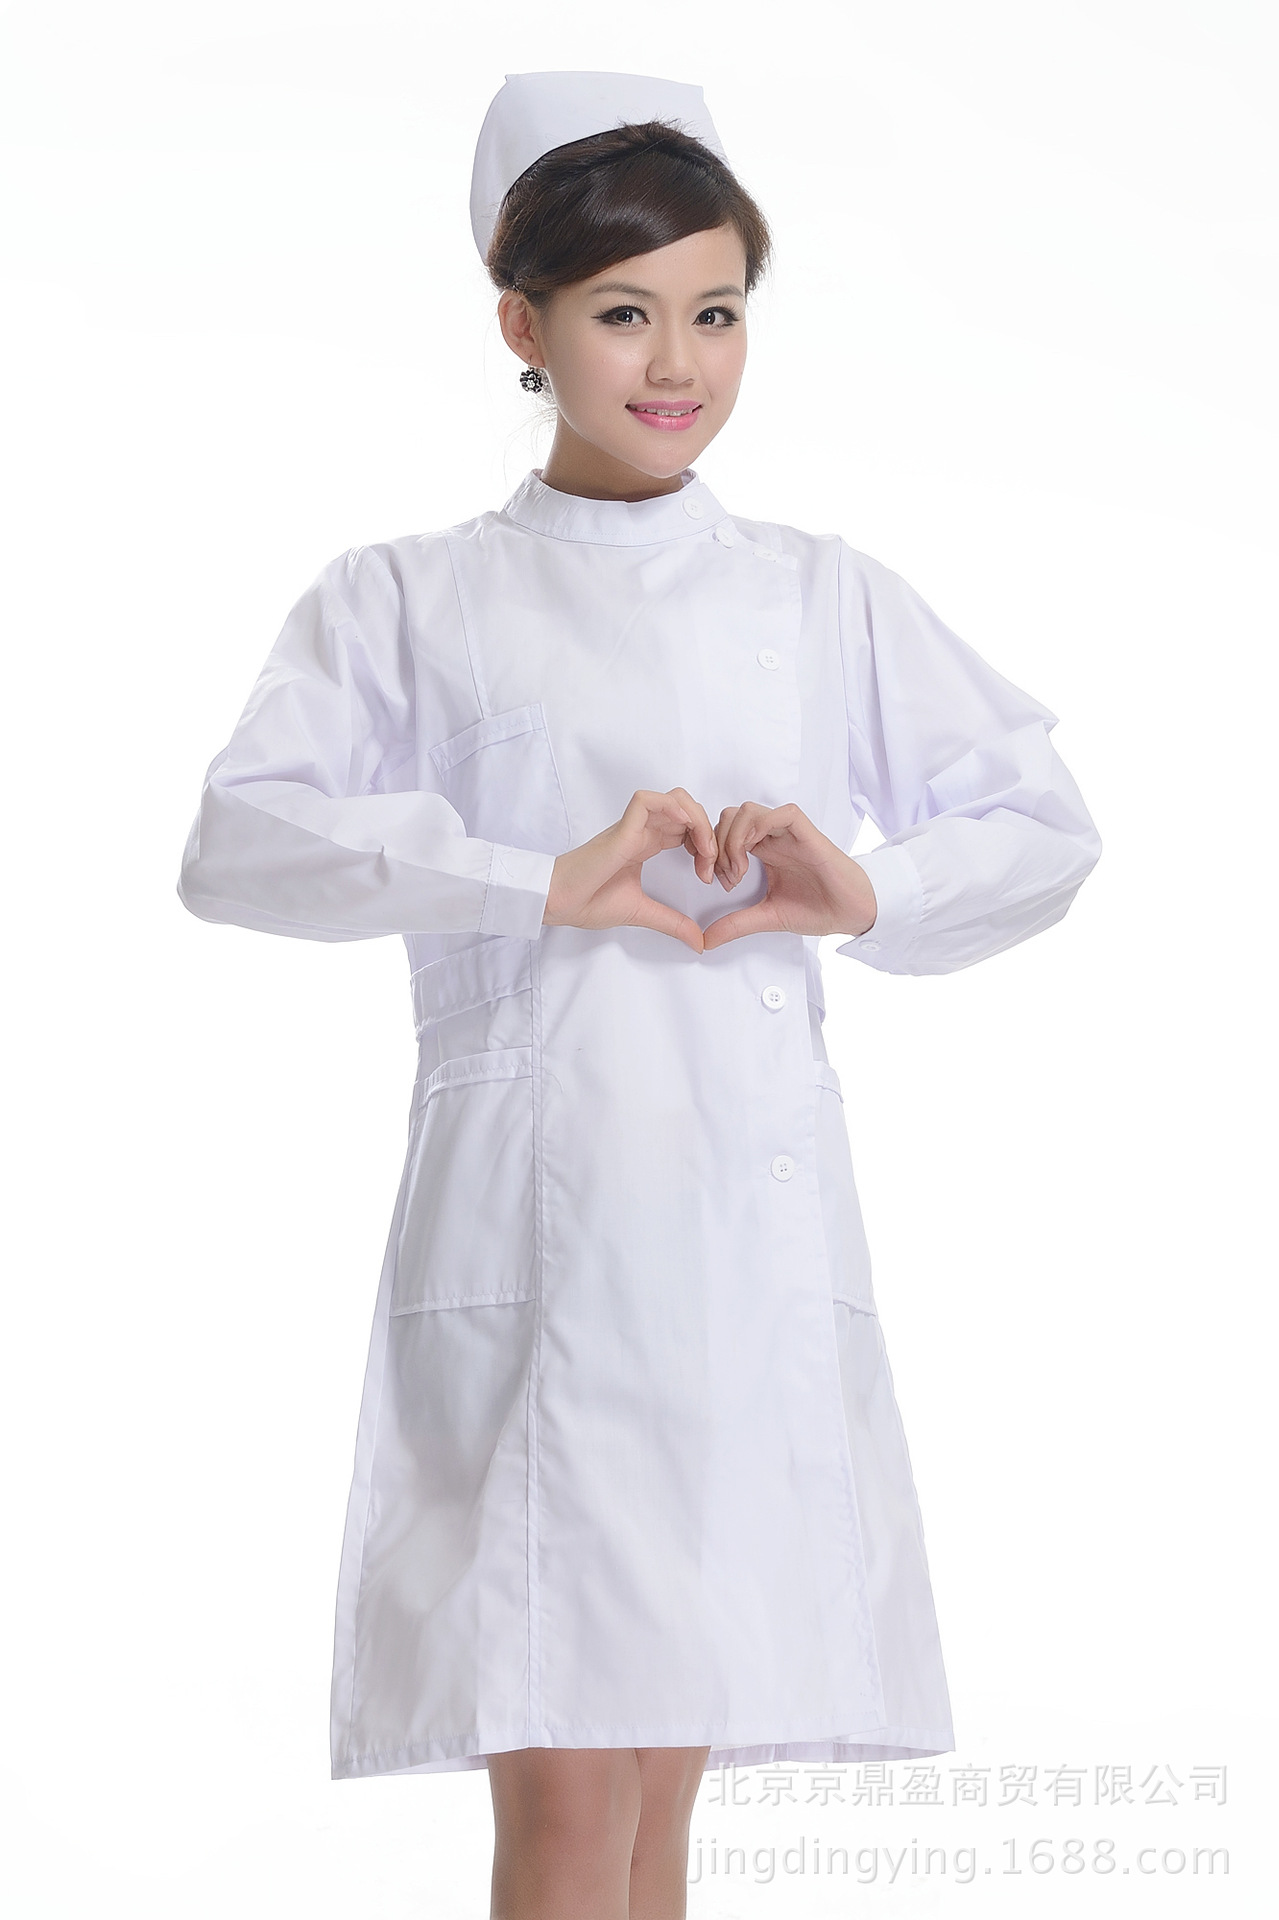 医生护士短袖白大褂工作服 验室服 化验室夏季涤棉短袖白大褂吸汗-阿里巴巴